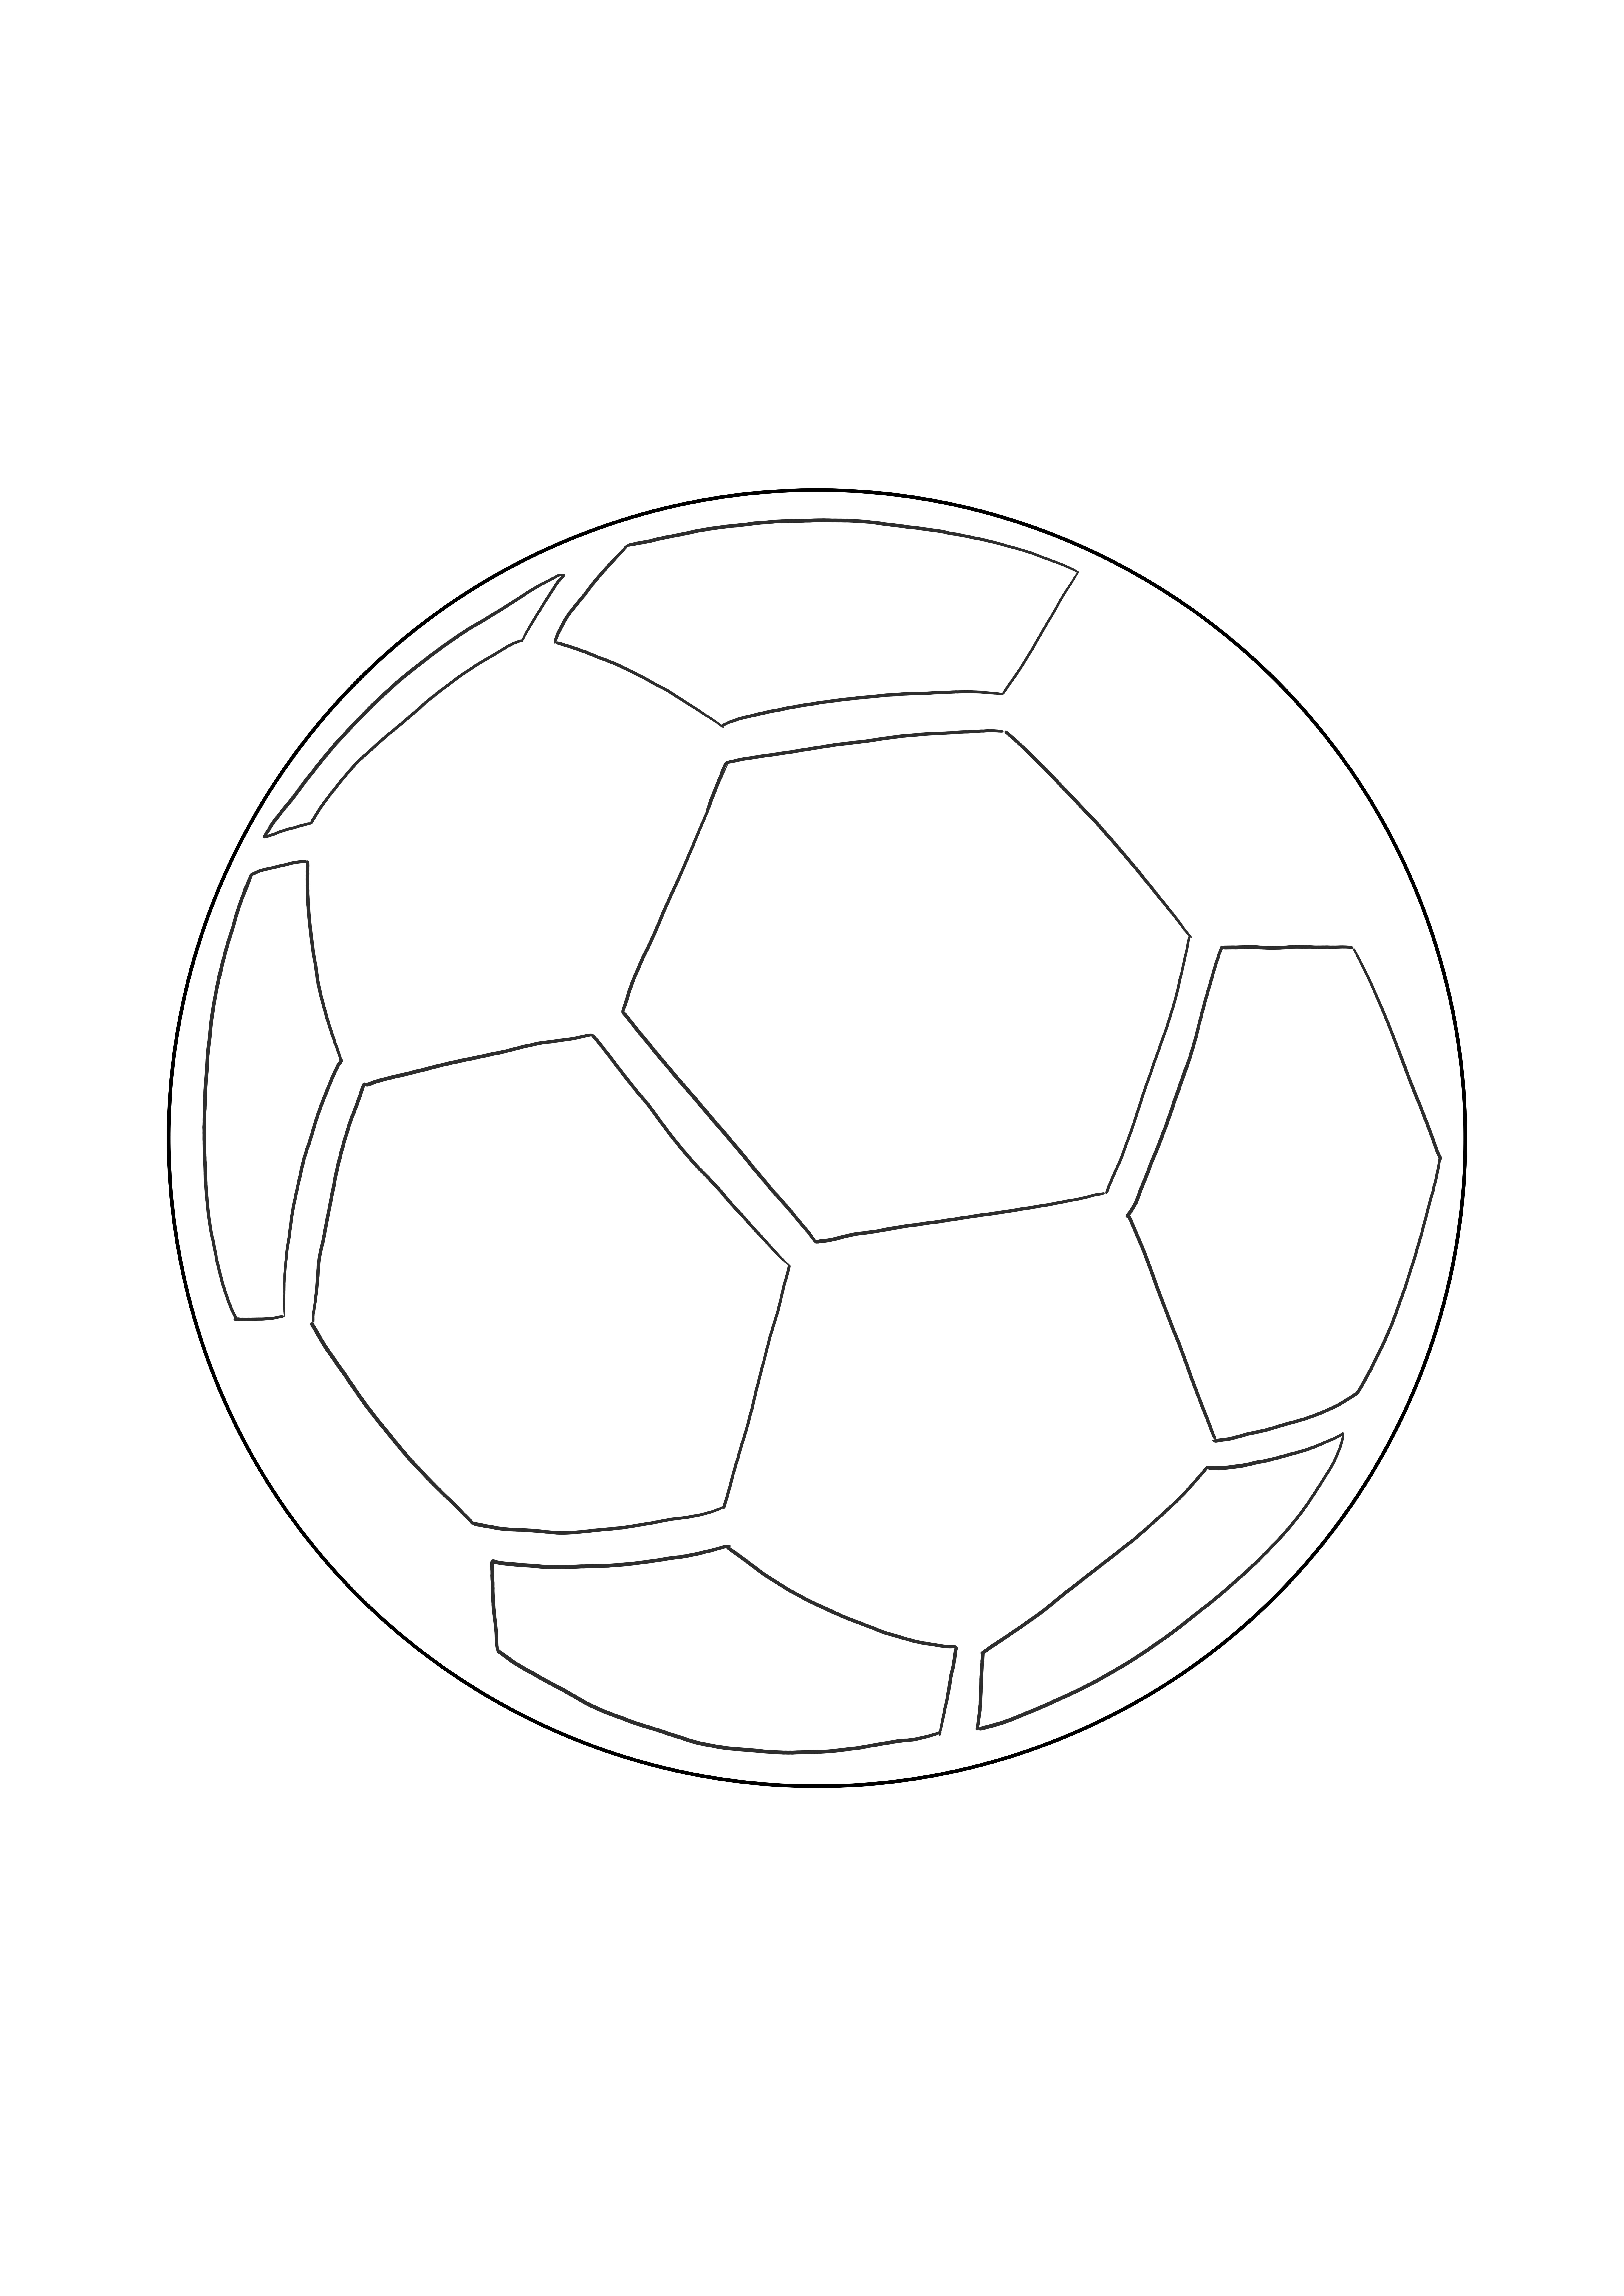 Coloração fácil de uma bola de futebol grátis para imprimir ou baixar imagem